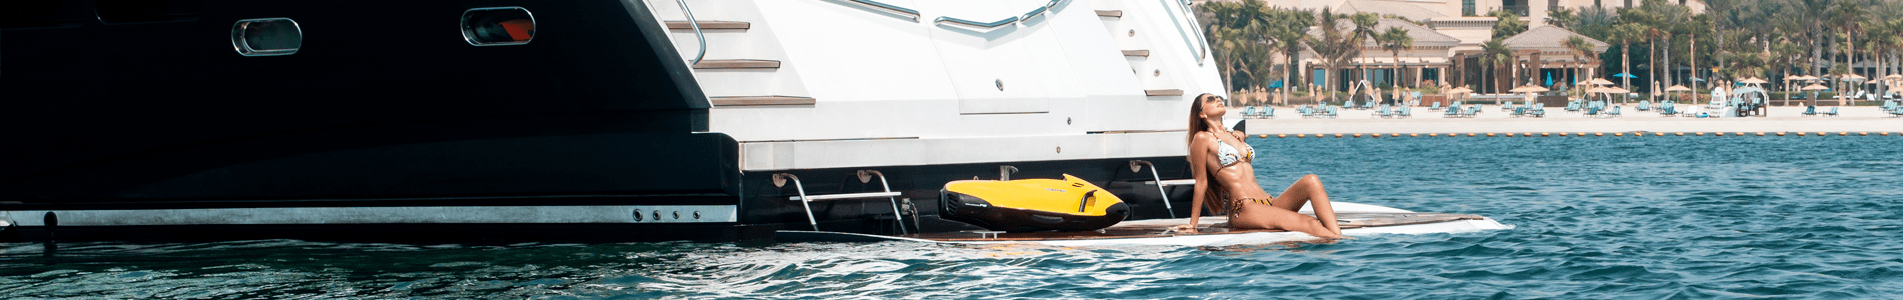 Buy Yachts Dubai